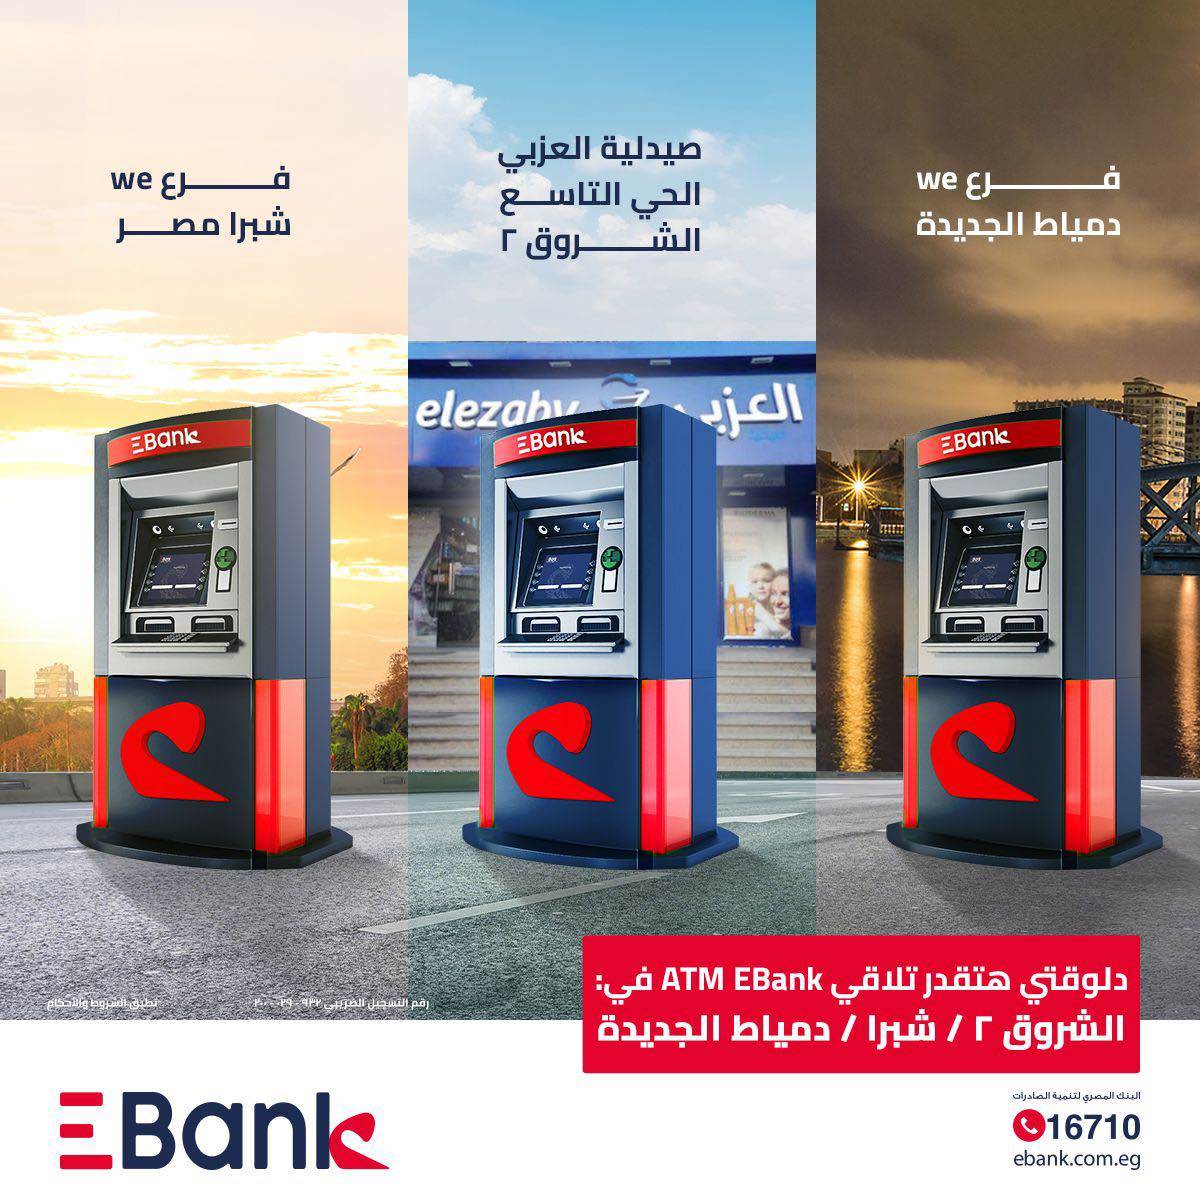 ماكينات Ebank للصراف آلي "ATM" بمحافظة القاهرة ودمياط الجديدة